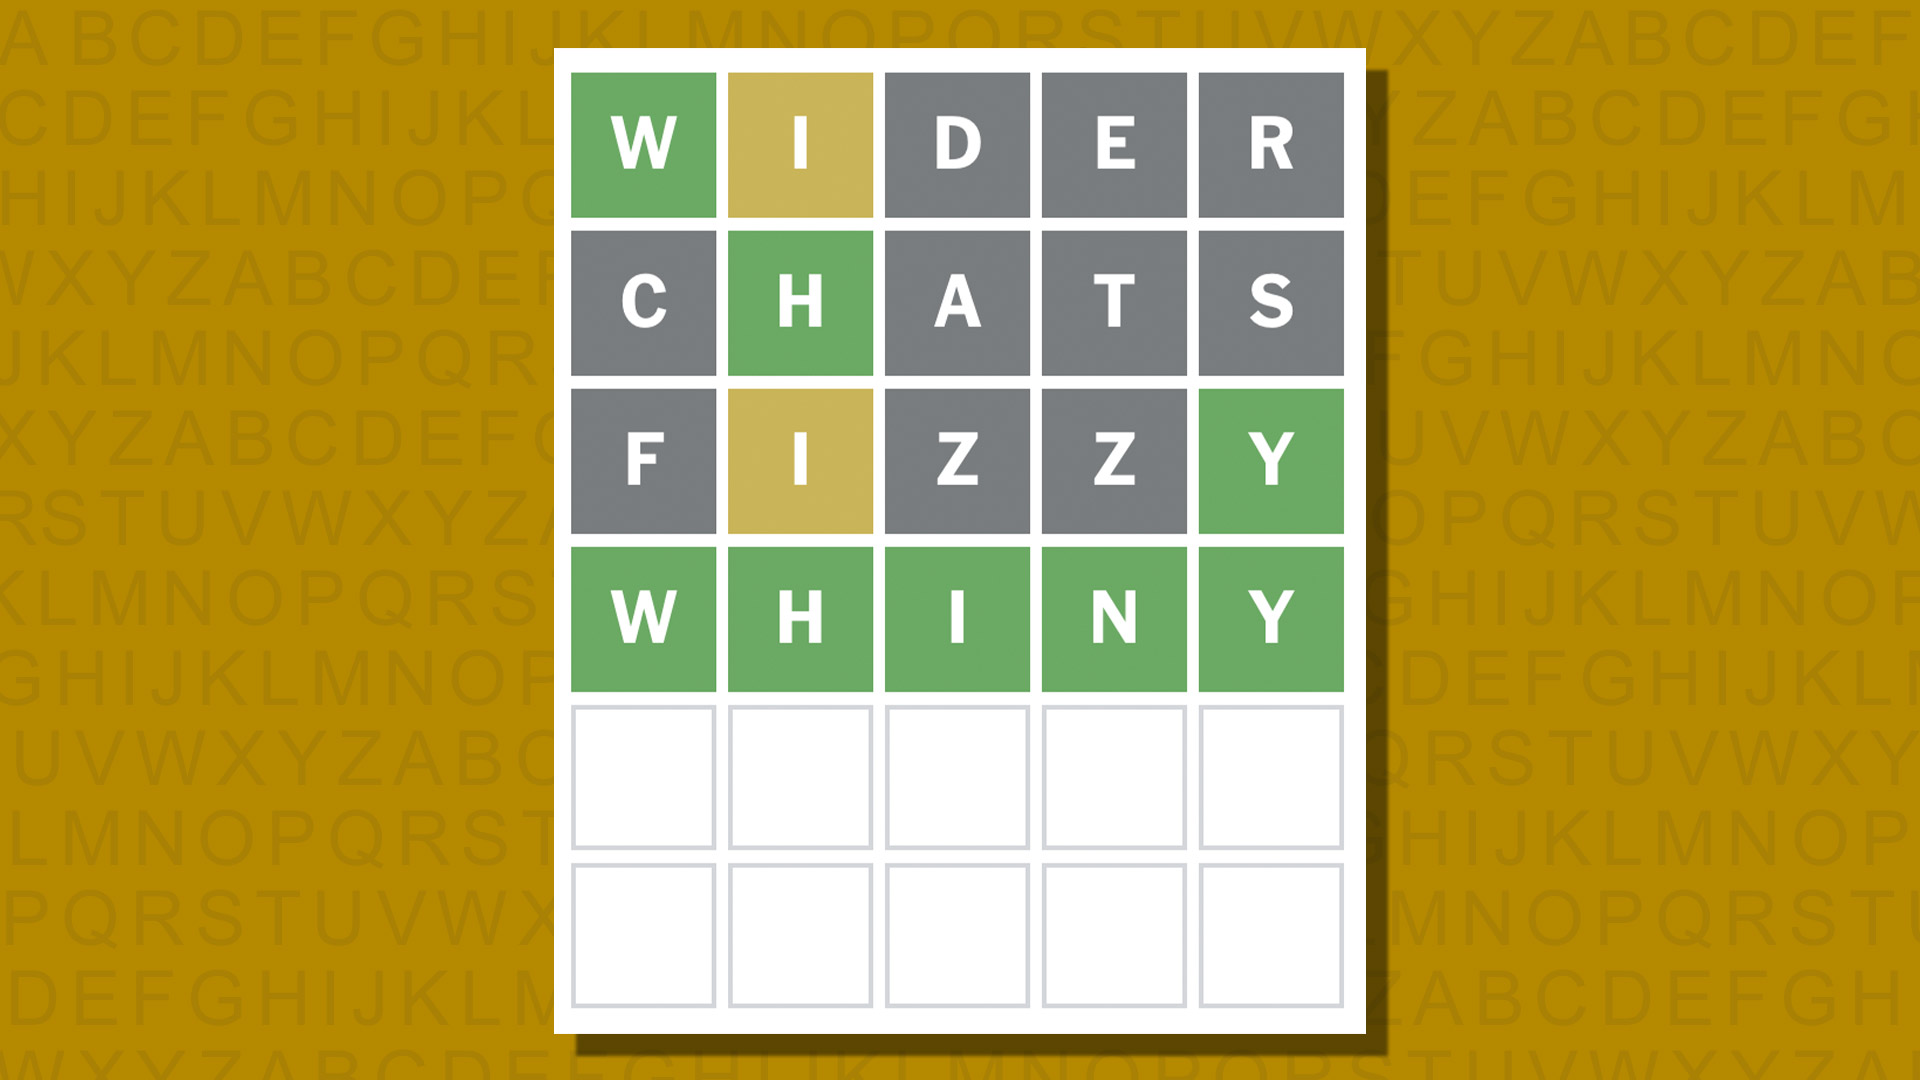 Ответ в формате Word для игры 1028 на желтом фоне